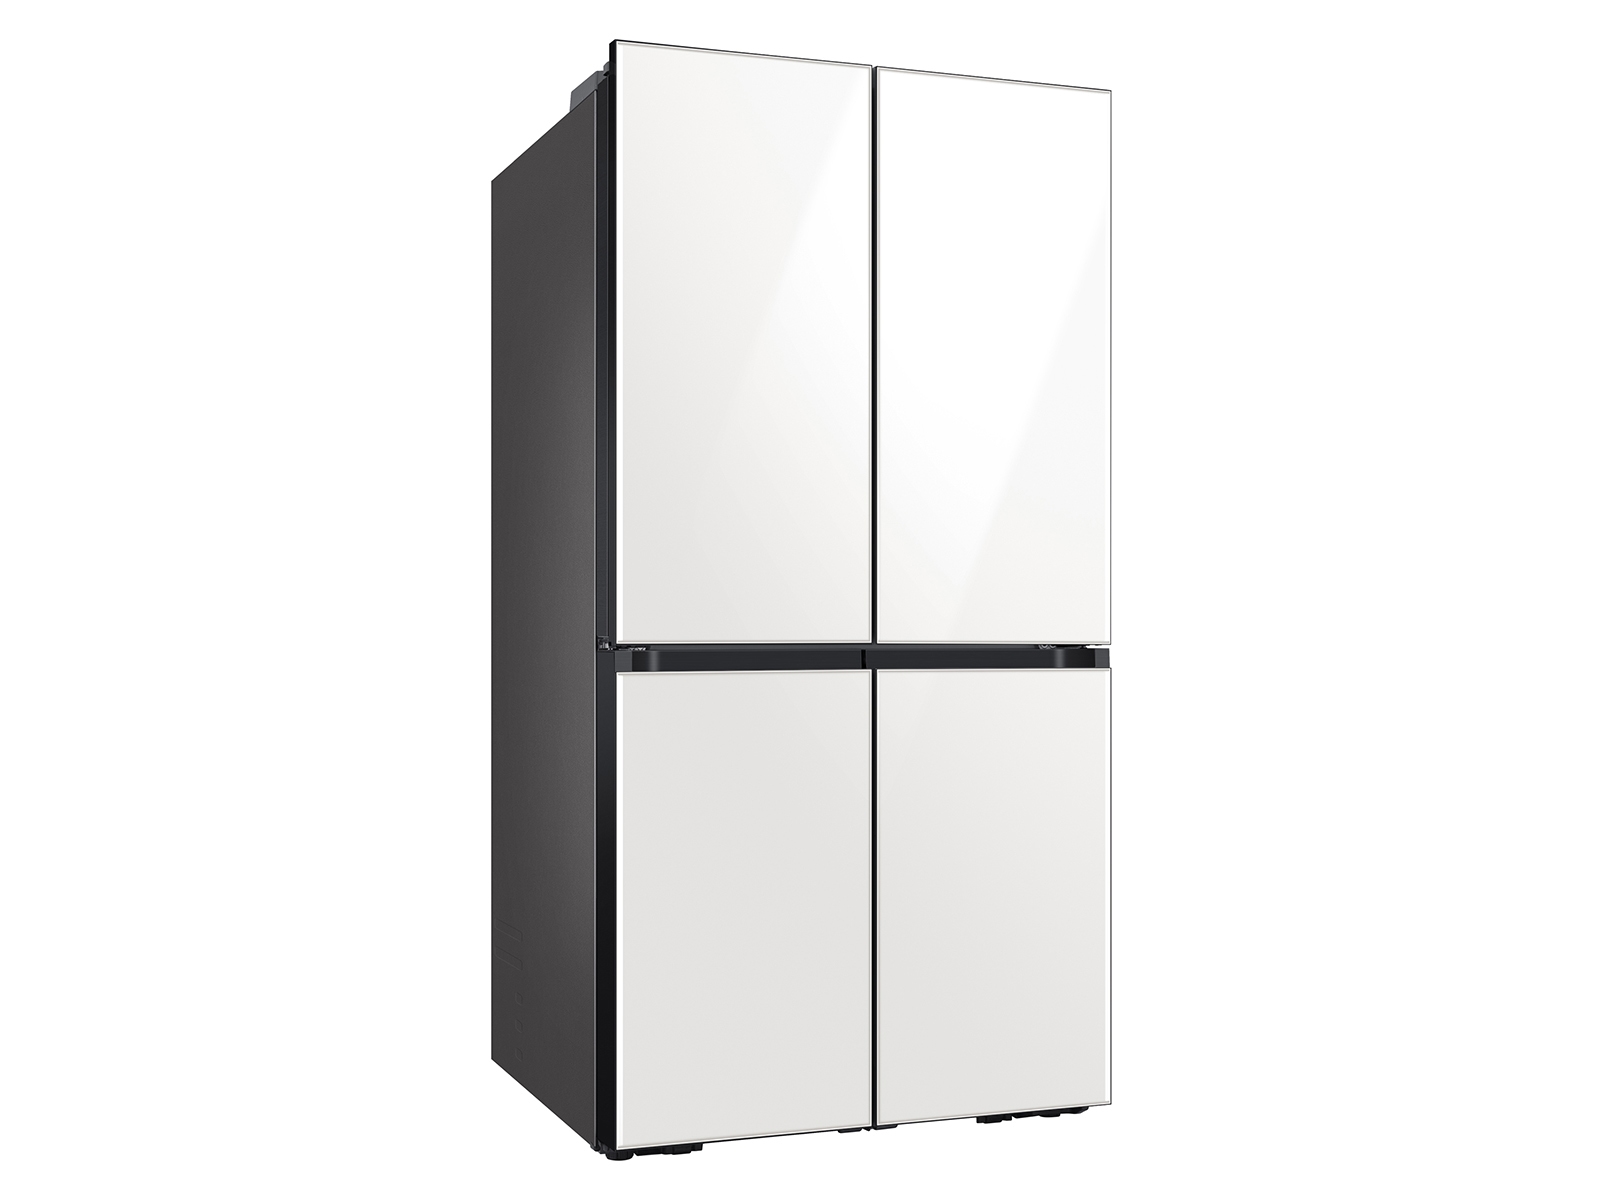 Thumbnail image of Bespoke 4-Door Flex™ Refrigerator (23 cu. ft.) in Emerald Green Steel